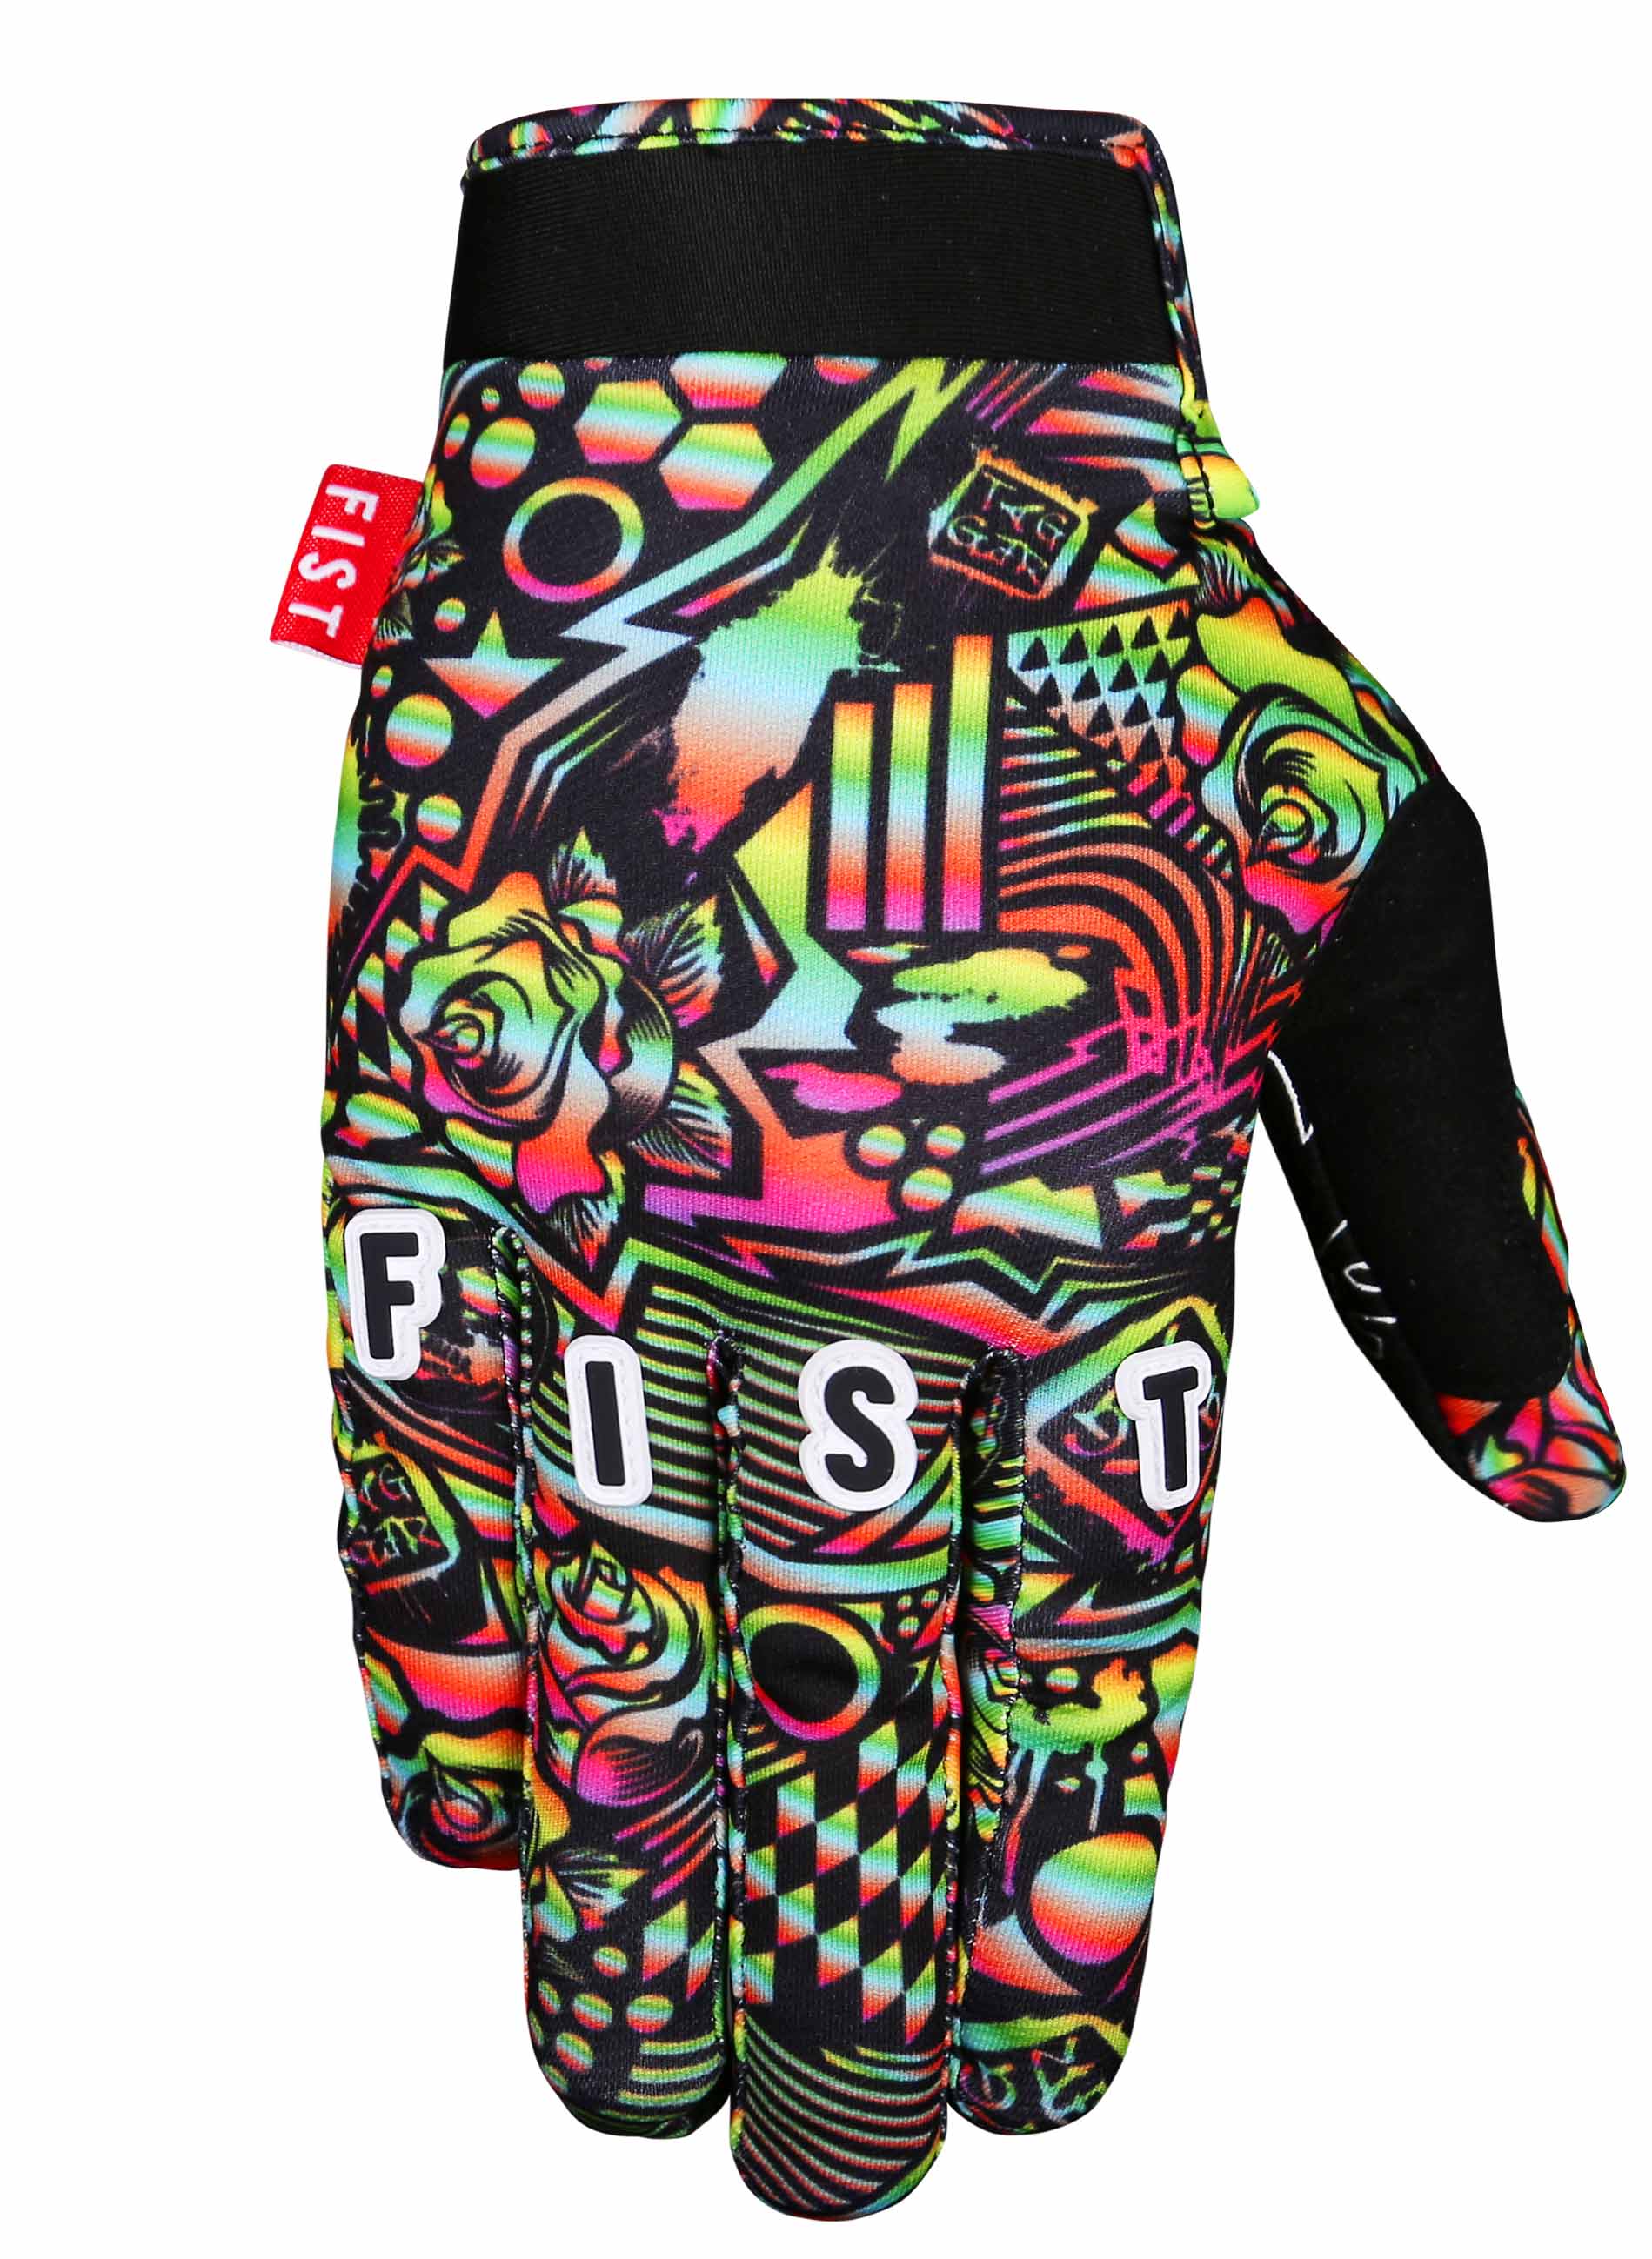 FIST Tagger Designs Glove